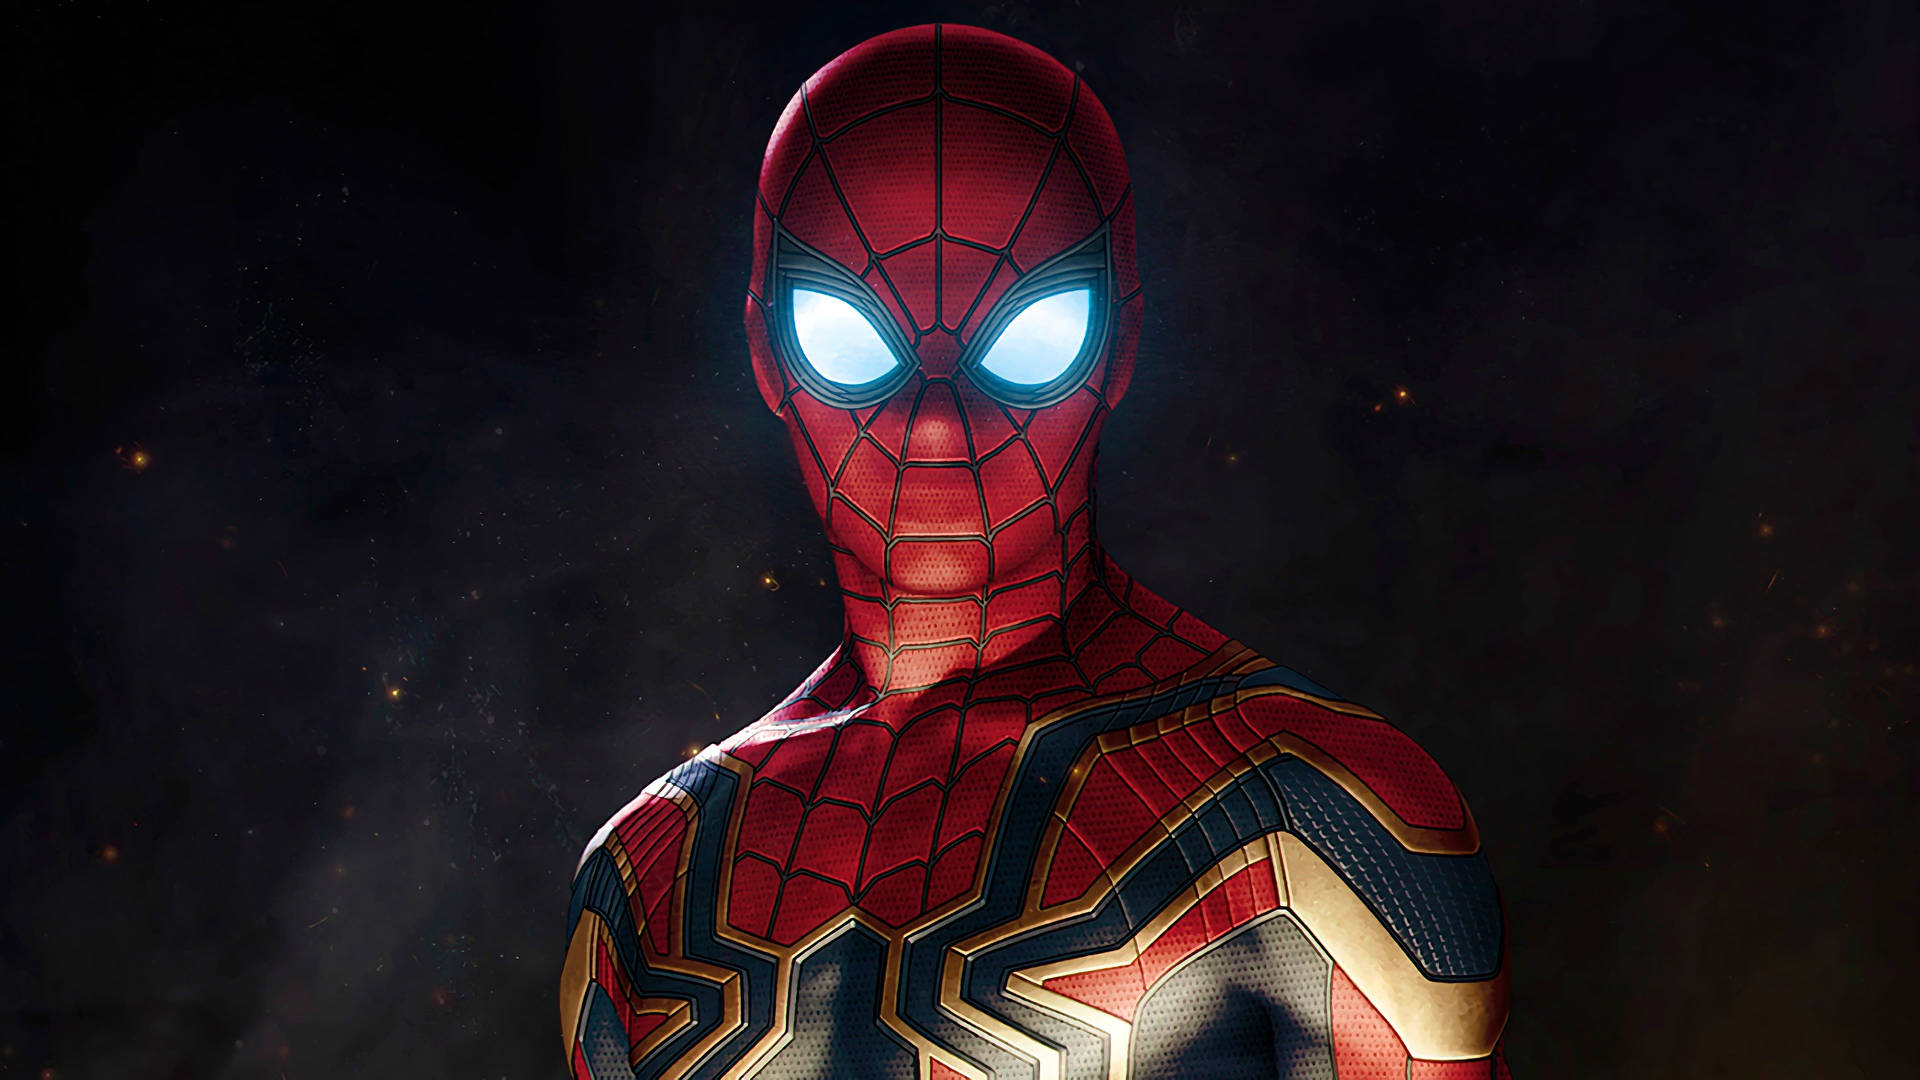 Marvel Avengers Iron Spider Wallpaper